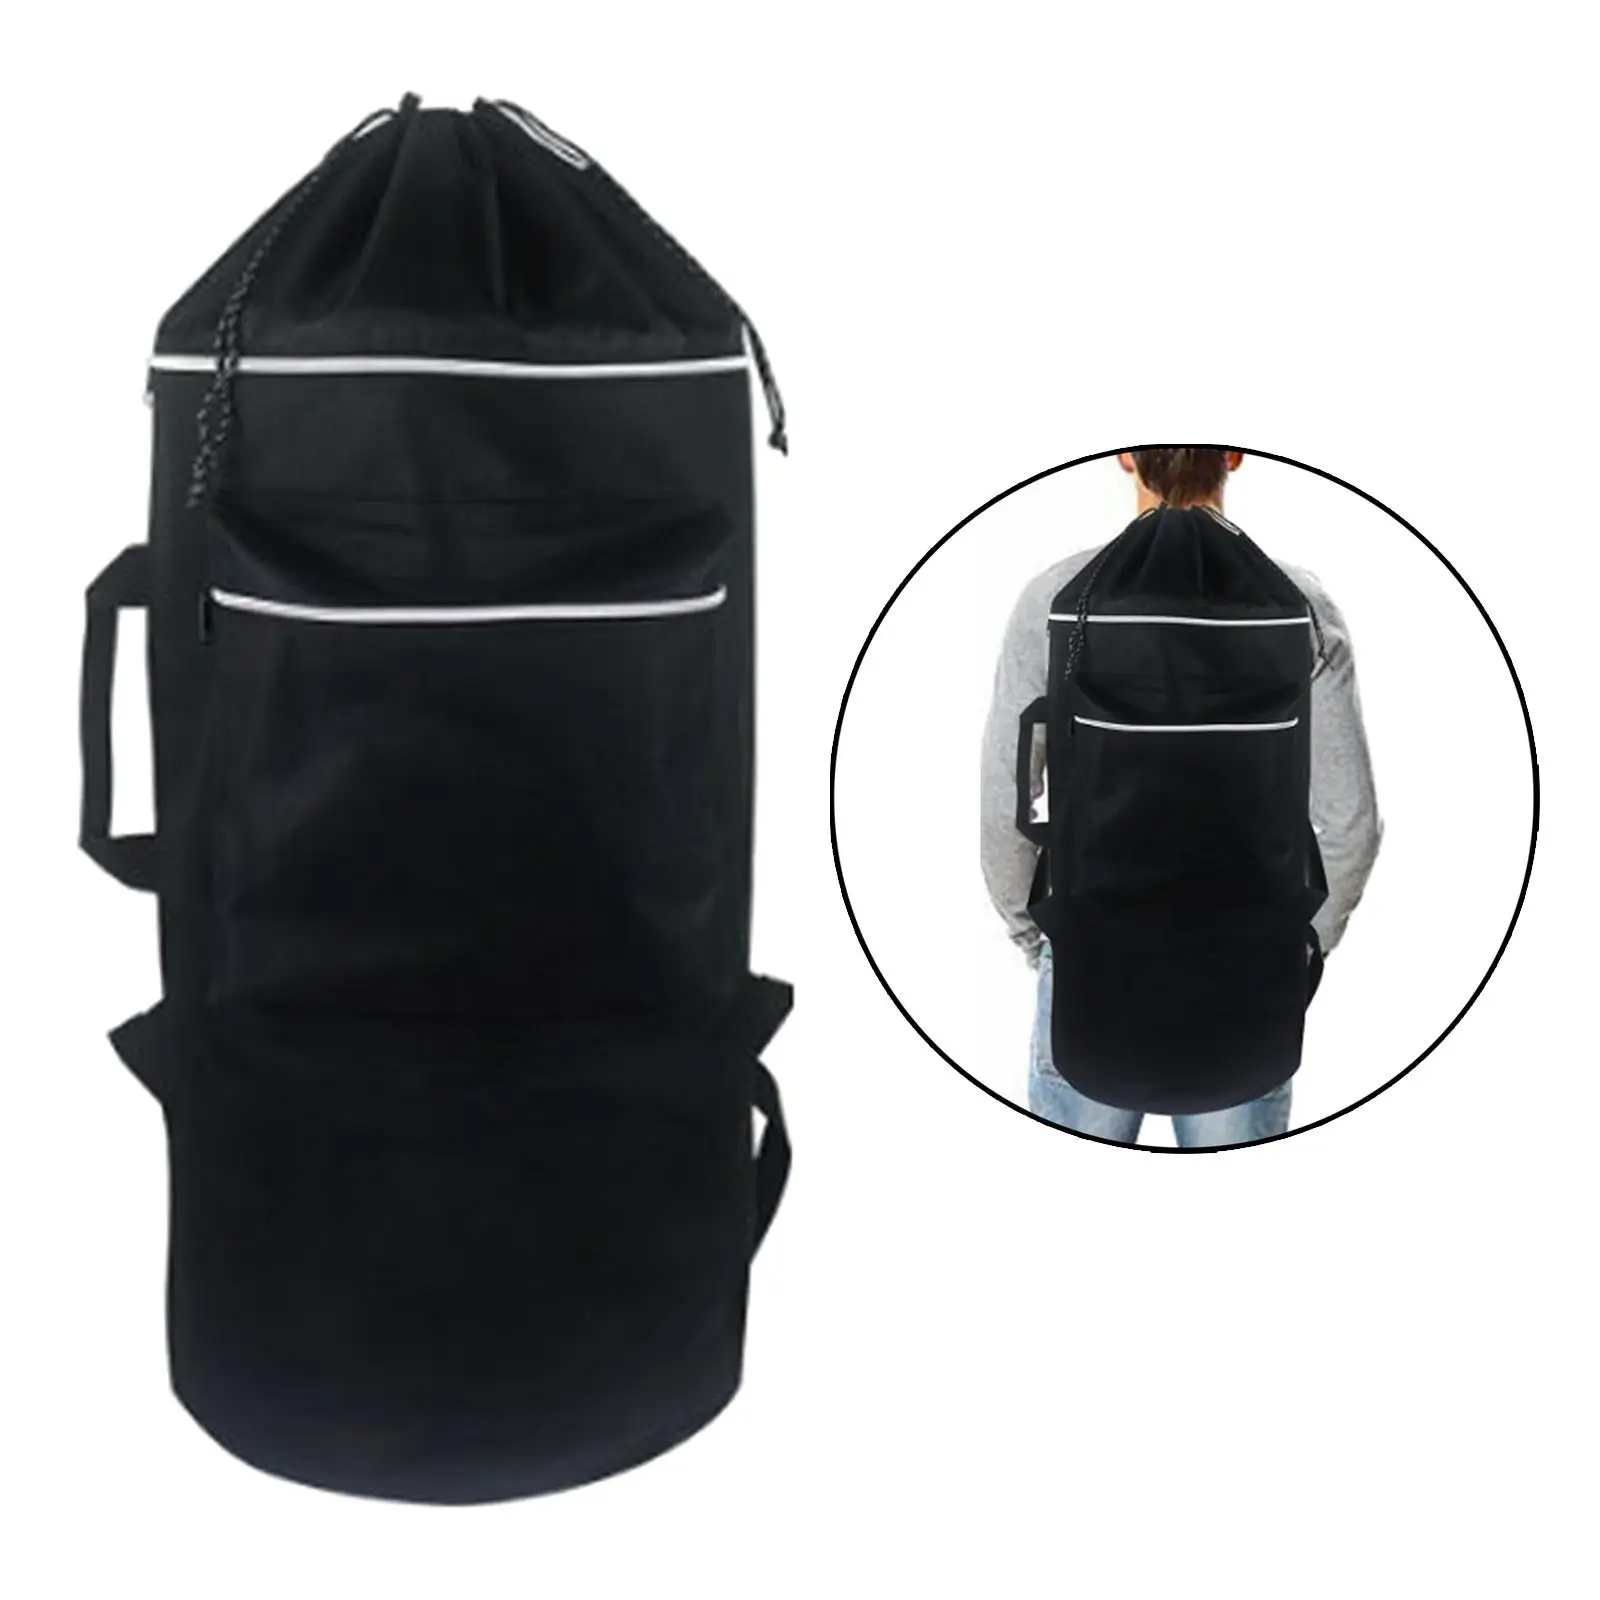 Skateboard Backpack, , 600D Oxford Cloth, Adjustable Shoulder Straps